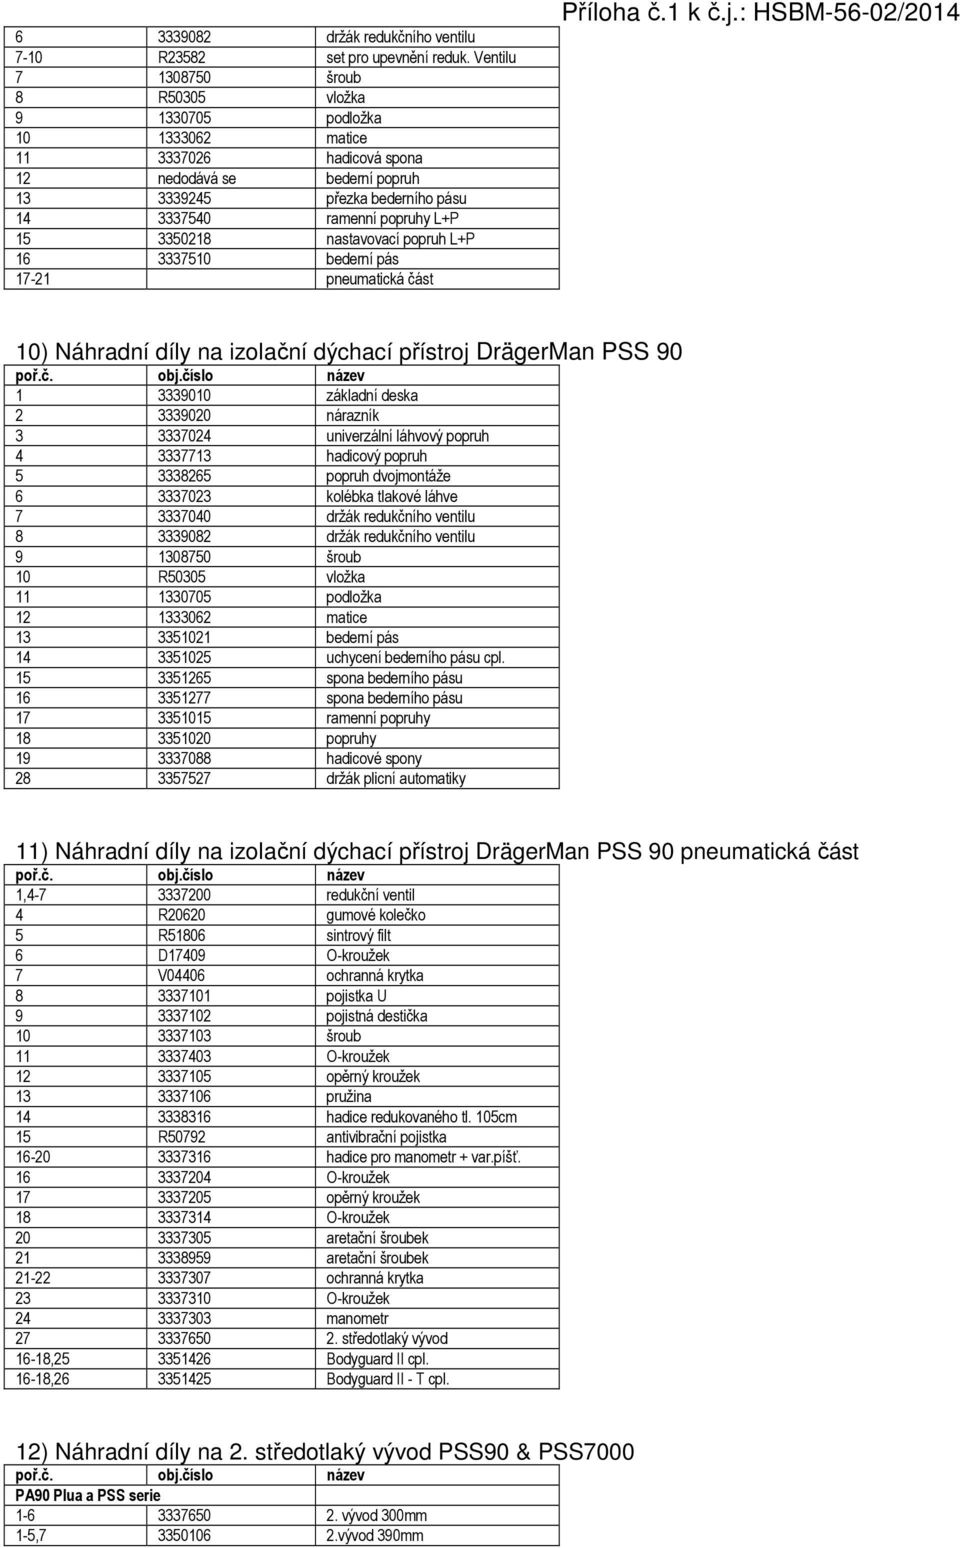 Specifikace pro technické prostředky Dräger - náhradní díly, servis a  revize - PDF Stažení zdarma